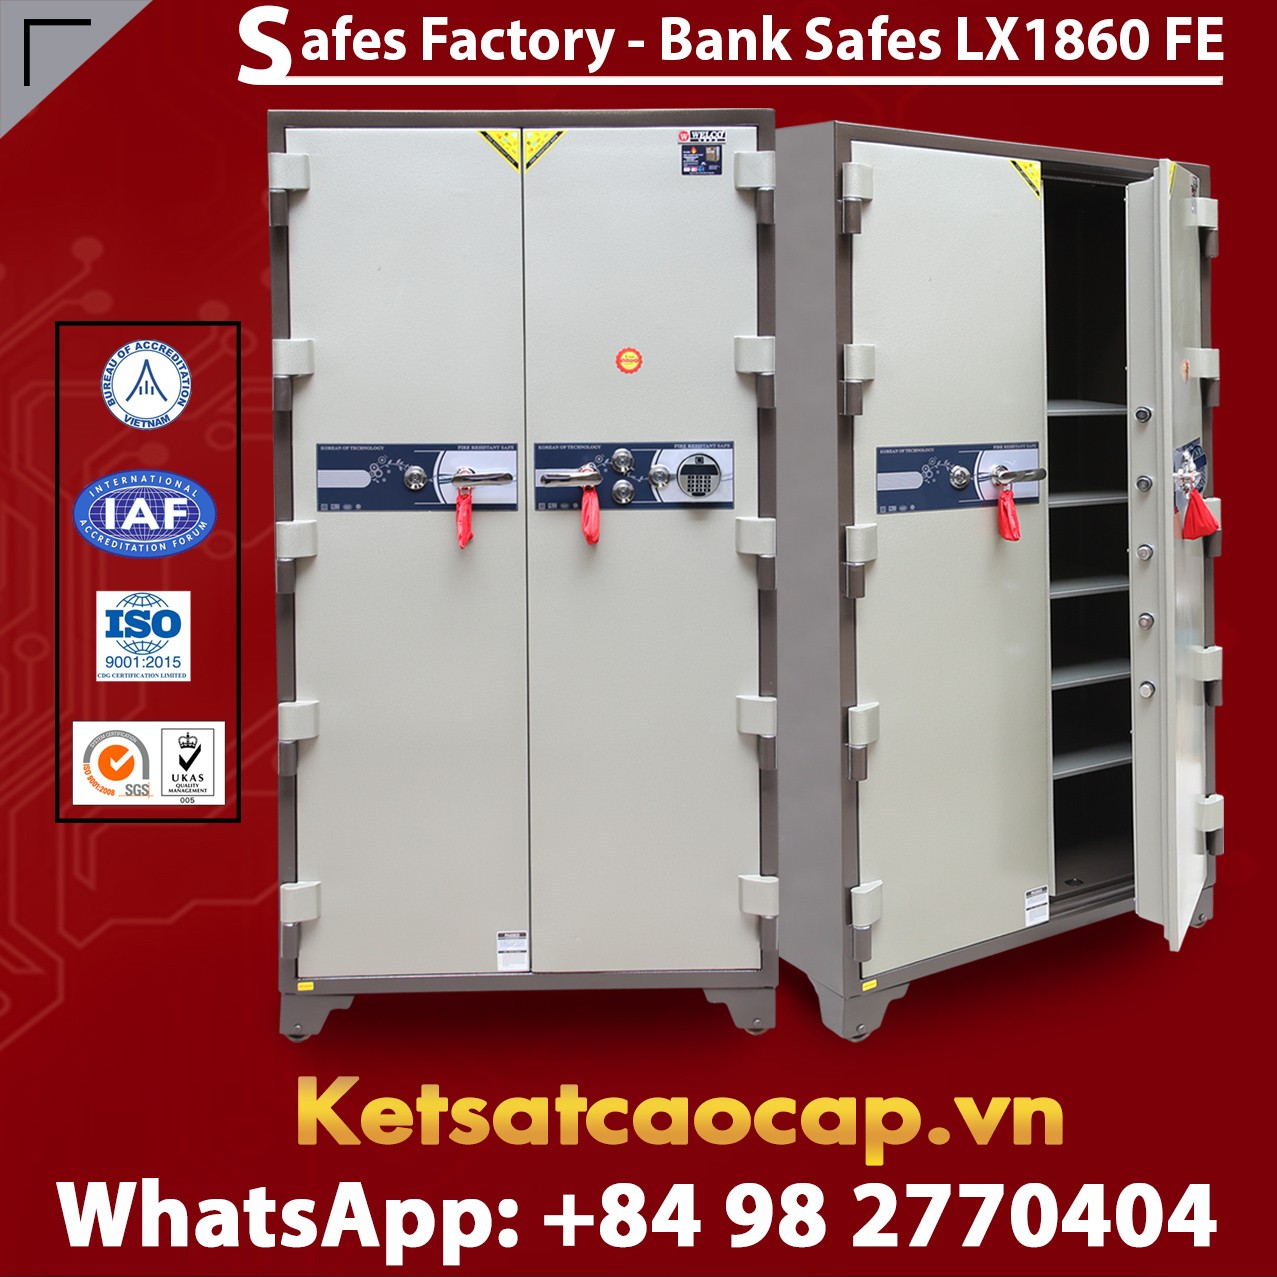 Bank Safes LX 1860 FE Two Door Fingerprint Electronic Locking System